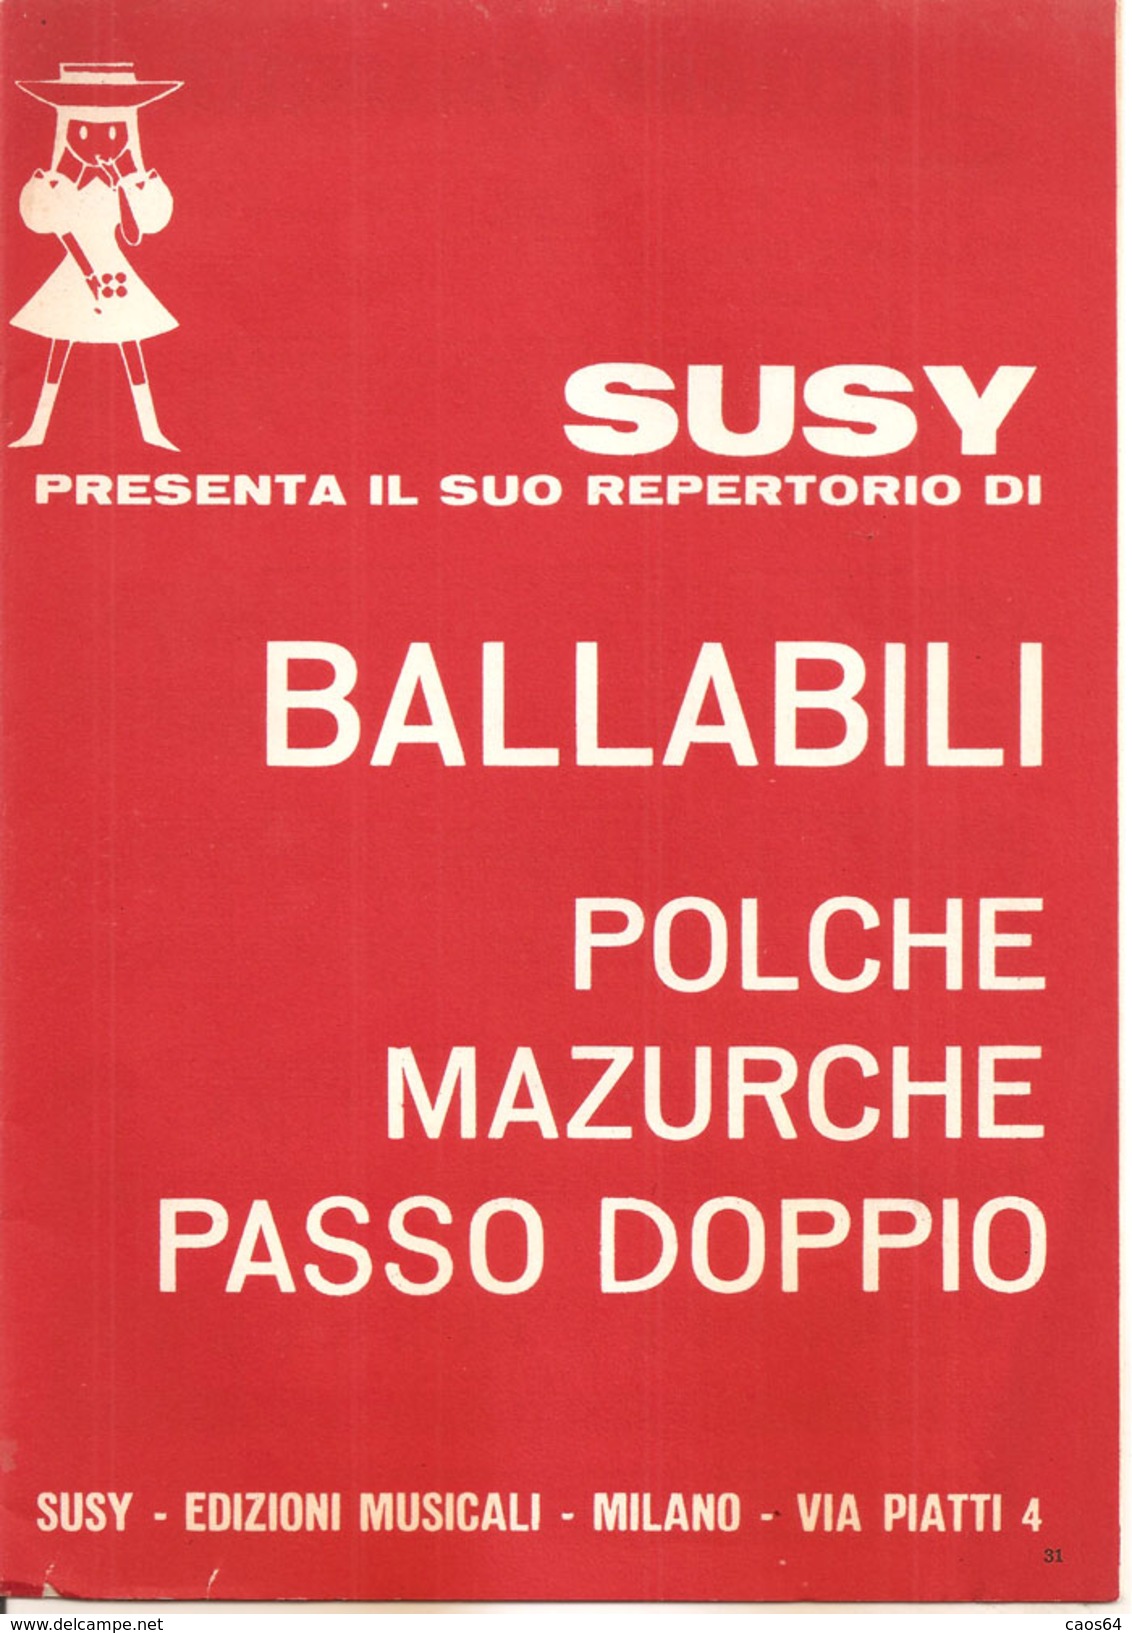 SUSY PRESENTA IL SUO REPERTORIO DI BALLABILI (II) - Scholingsboek